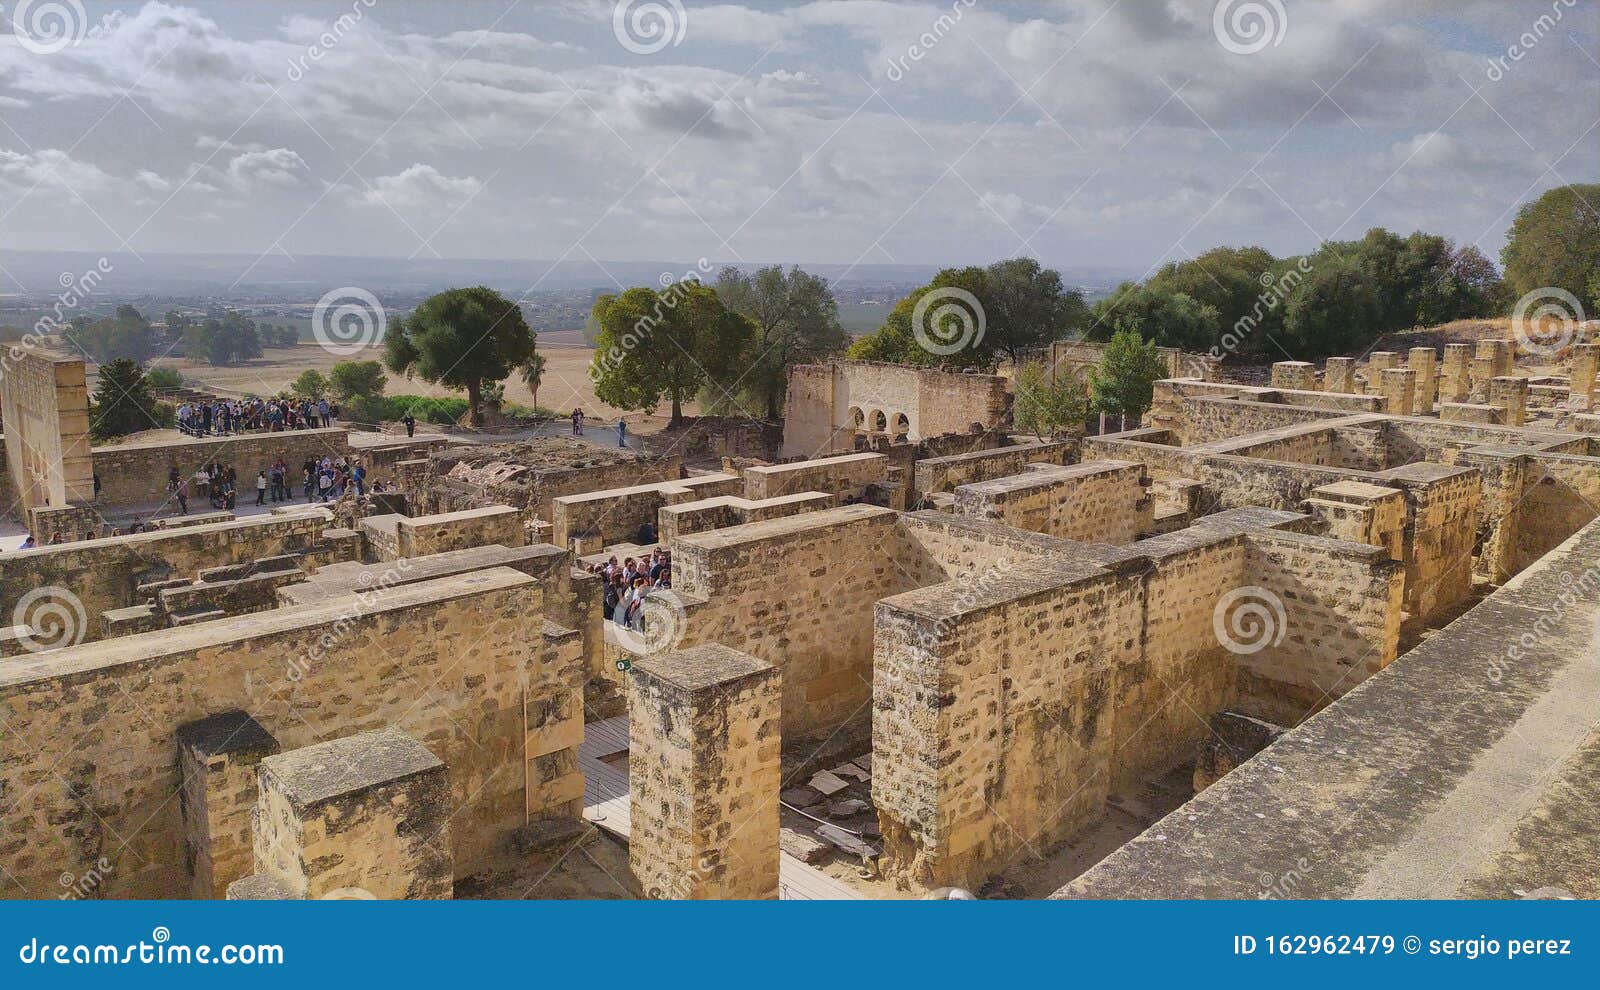 medina azahara city capital of the umayyad empire under the reign of abderraman i and abderraman iii